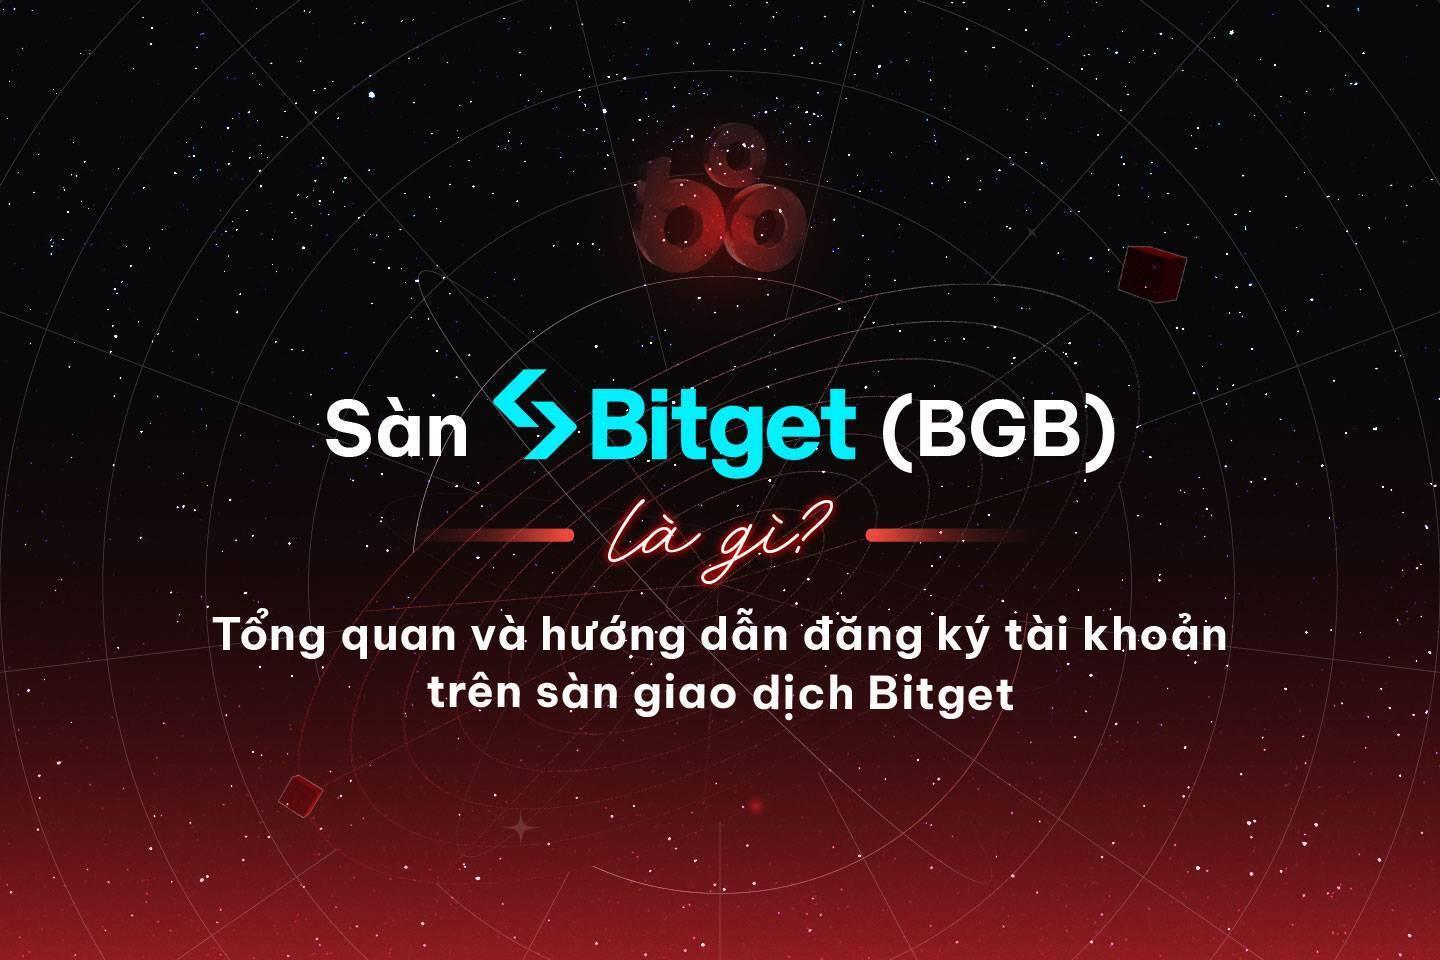 san-bitget-bgb-la-gi-tong-quan-va-huong-dan-dang-ky-tai-khoan-tren-san-giao-dich-bitget